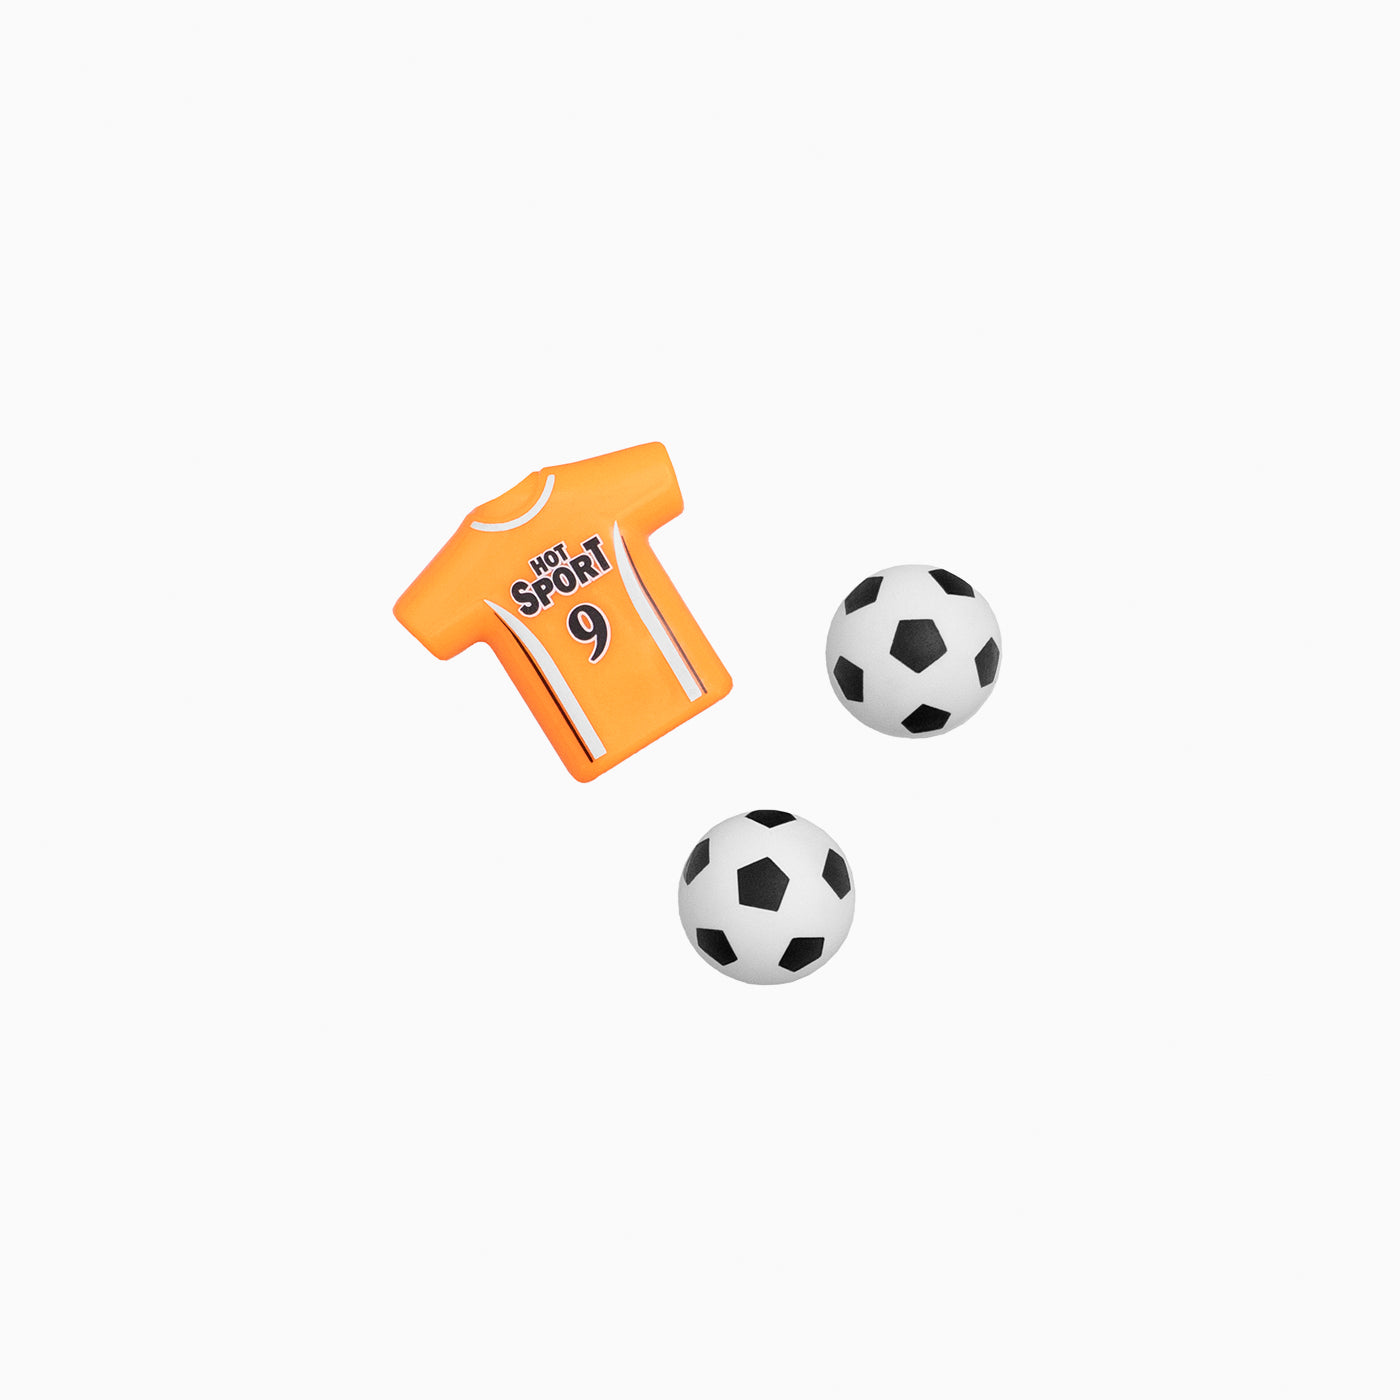 Stellen Sie Piñata Football / Pack 3 UDS -Spielsachen ein